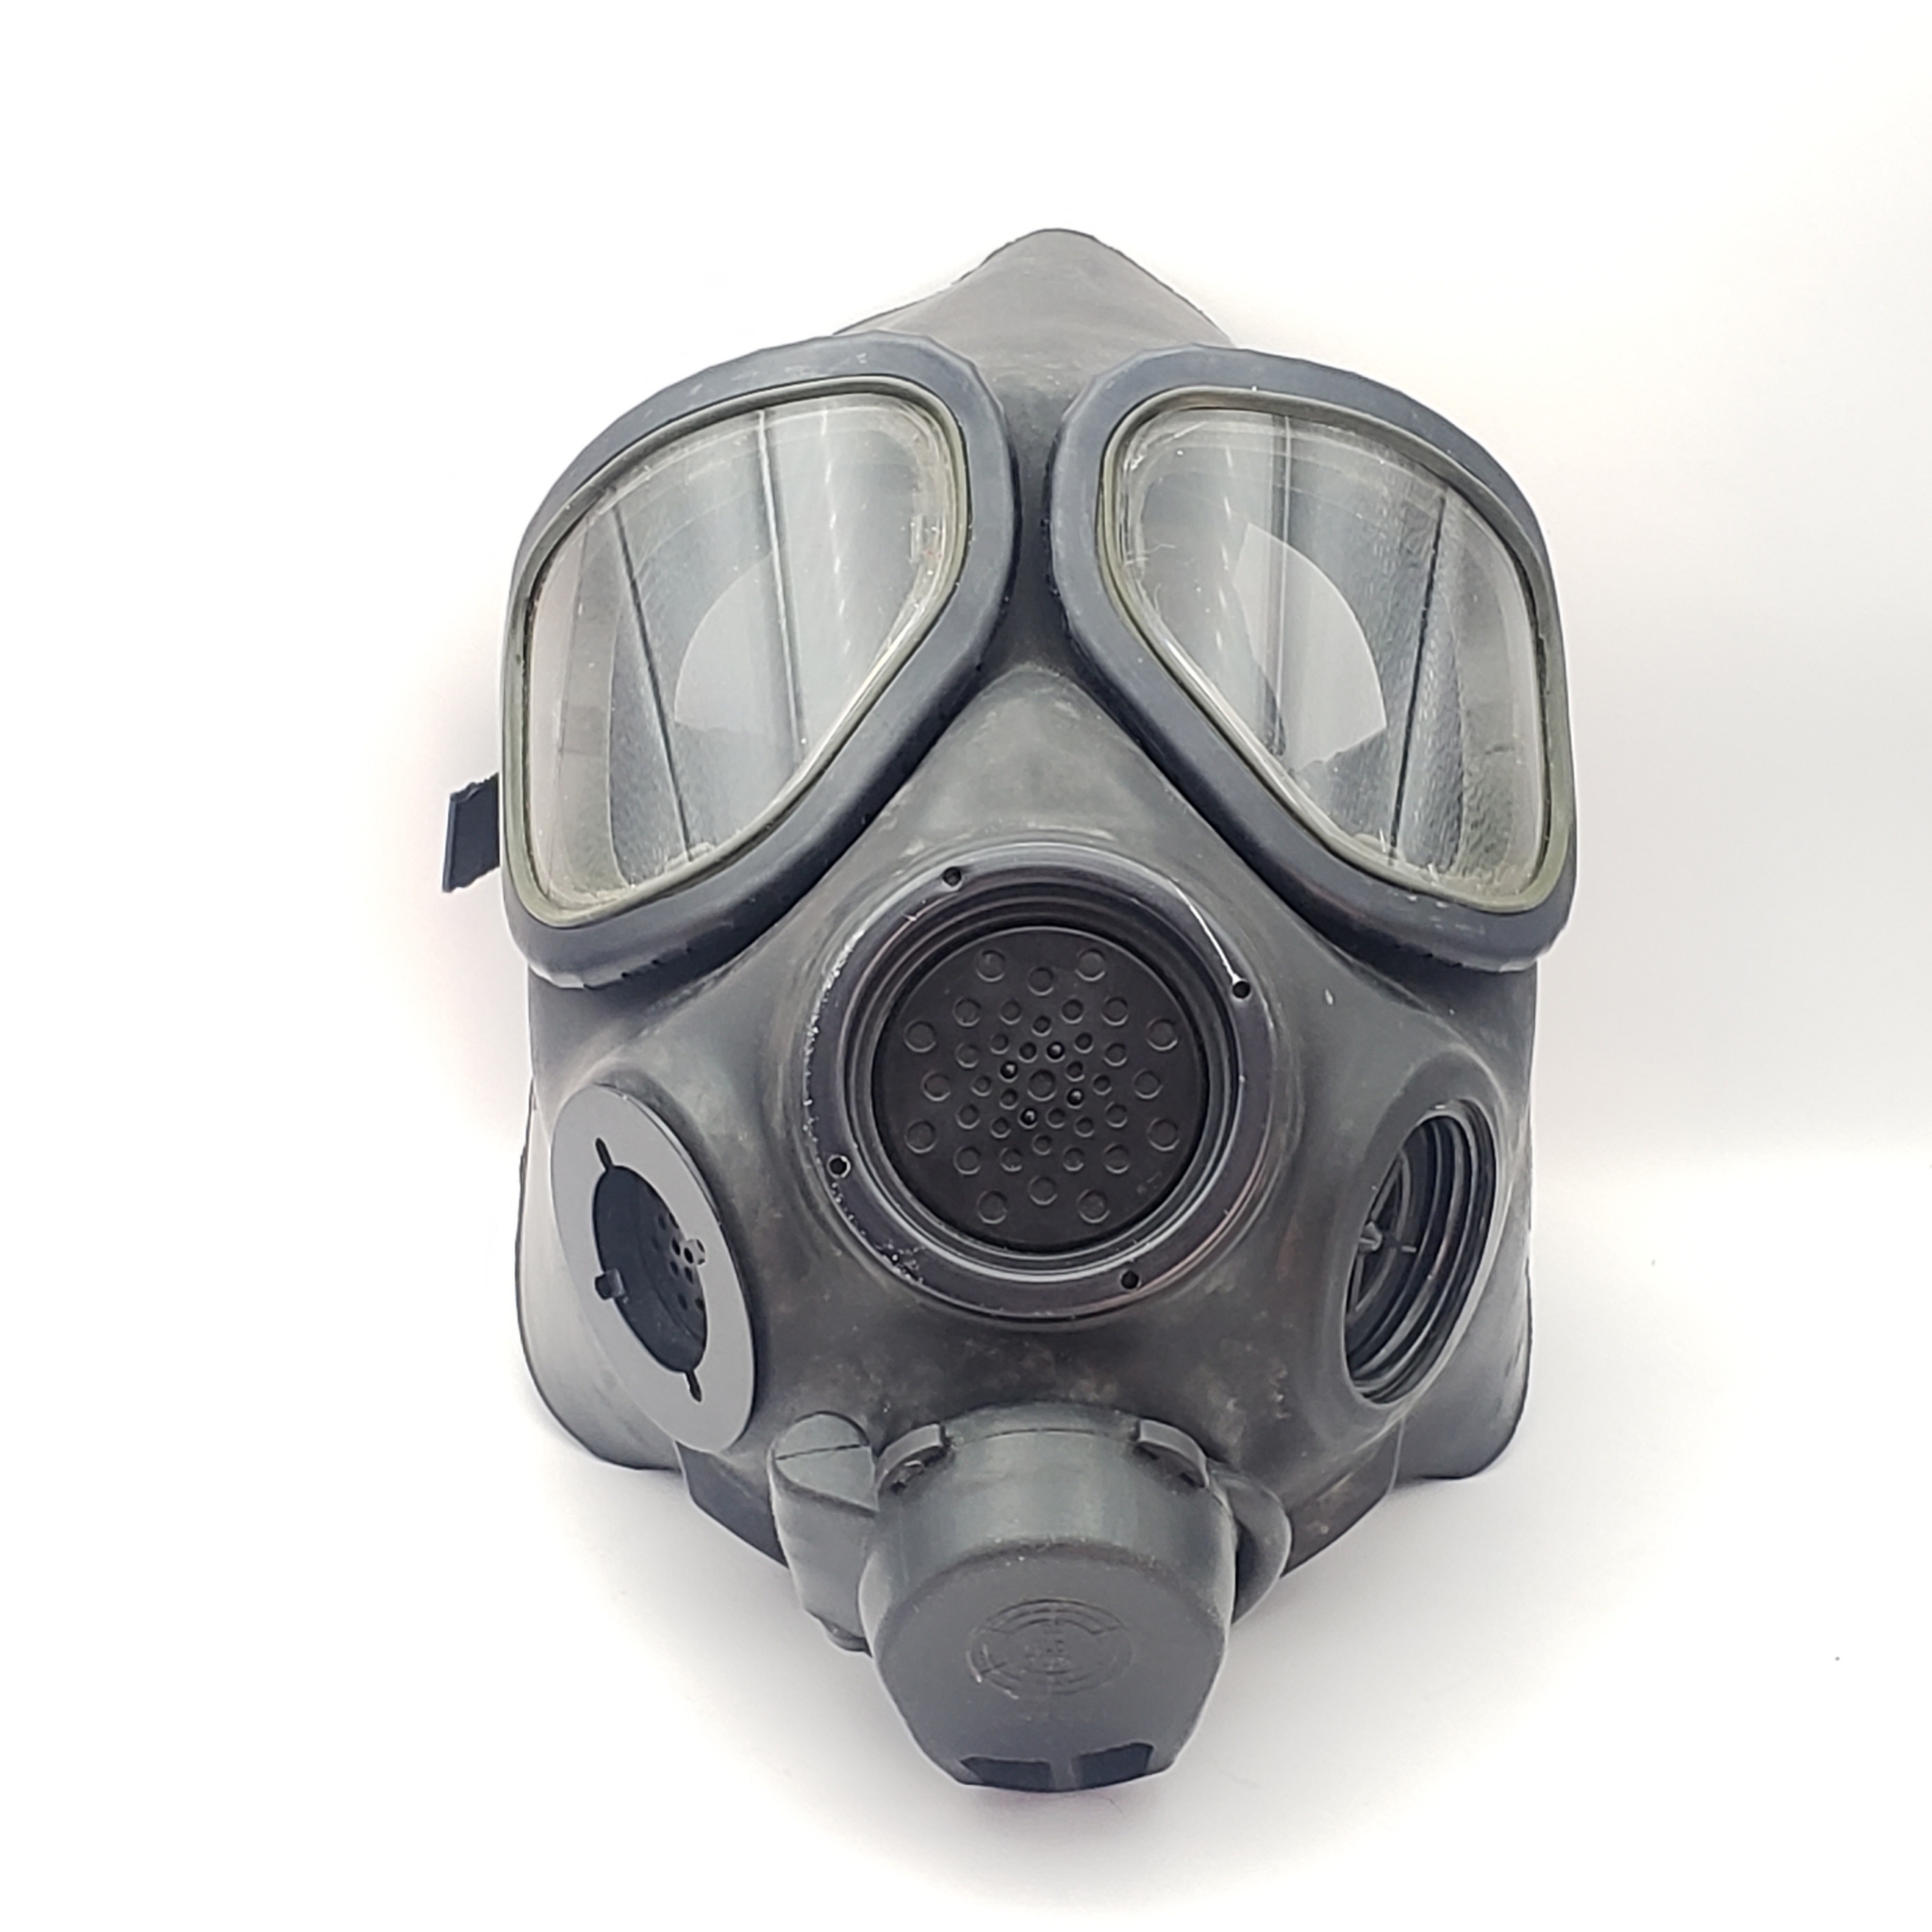 M-40 gas mask